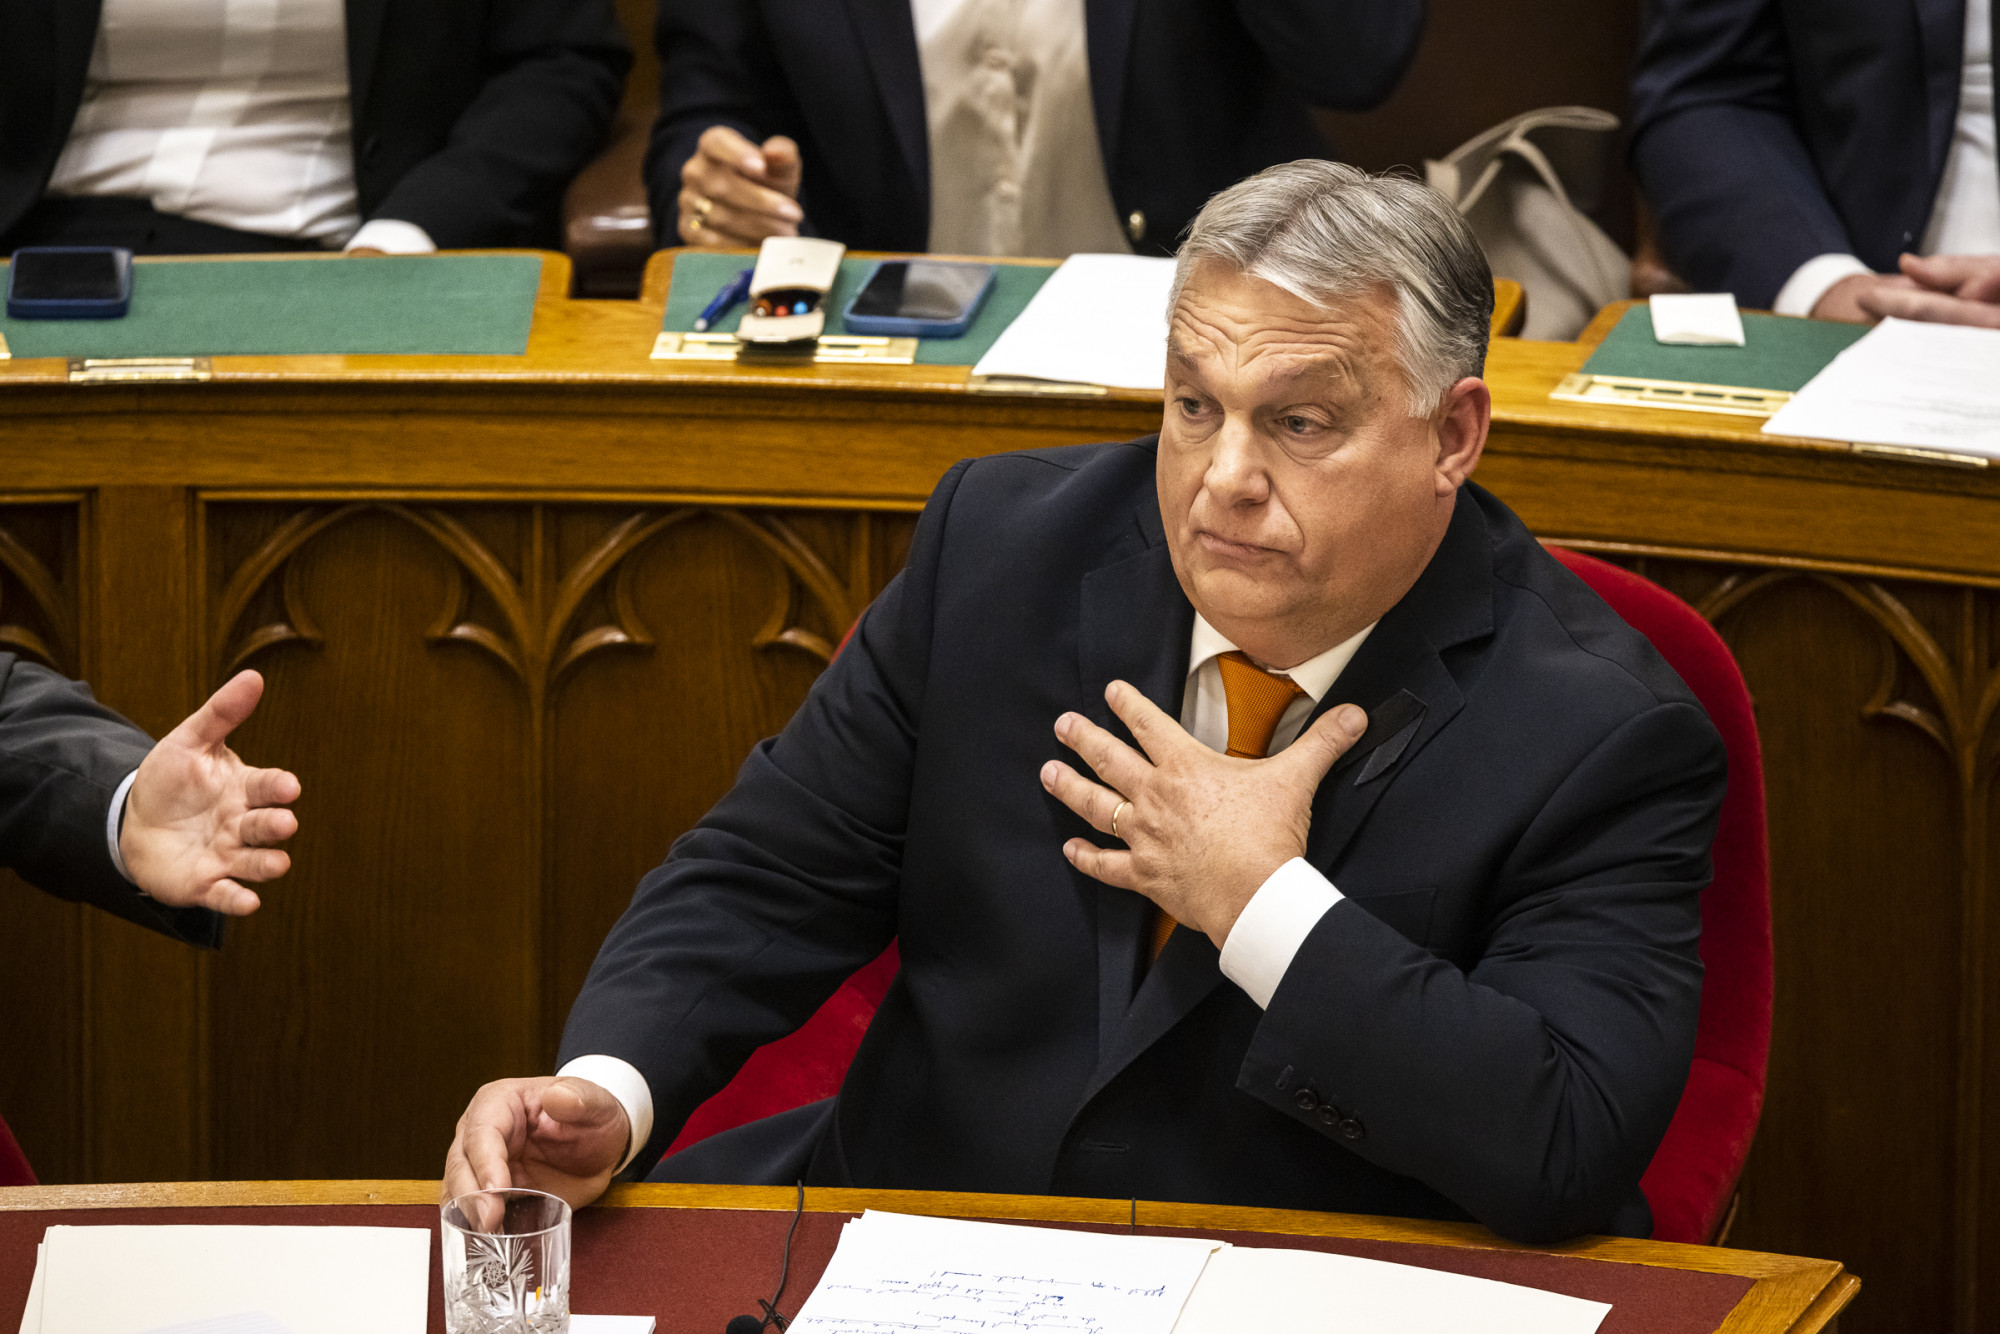 Mégis elrendelte a nyomozást a kerületi ügyészség Orbán angol nyelvű honlapjának ügyében